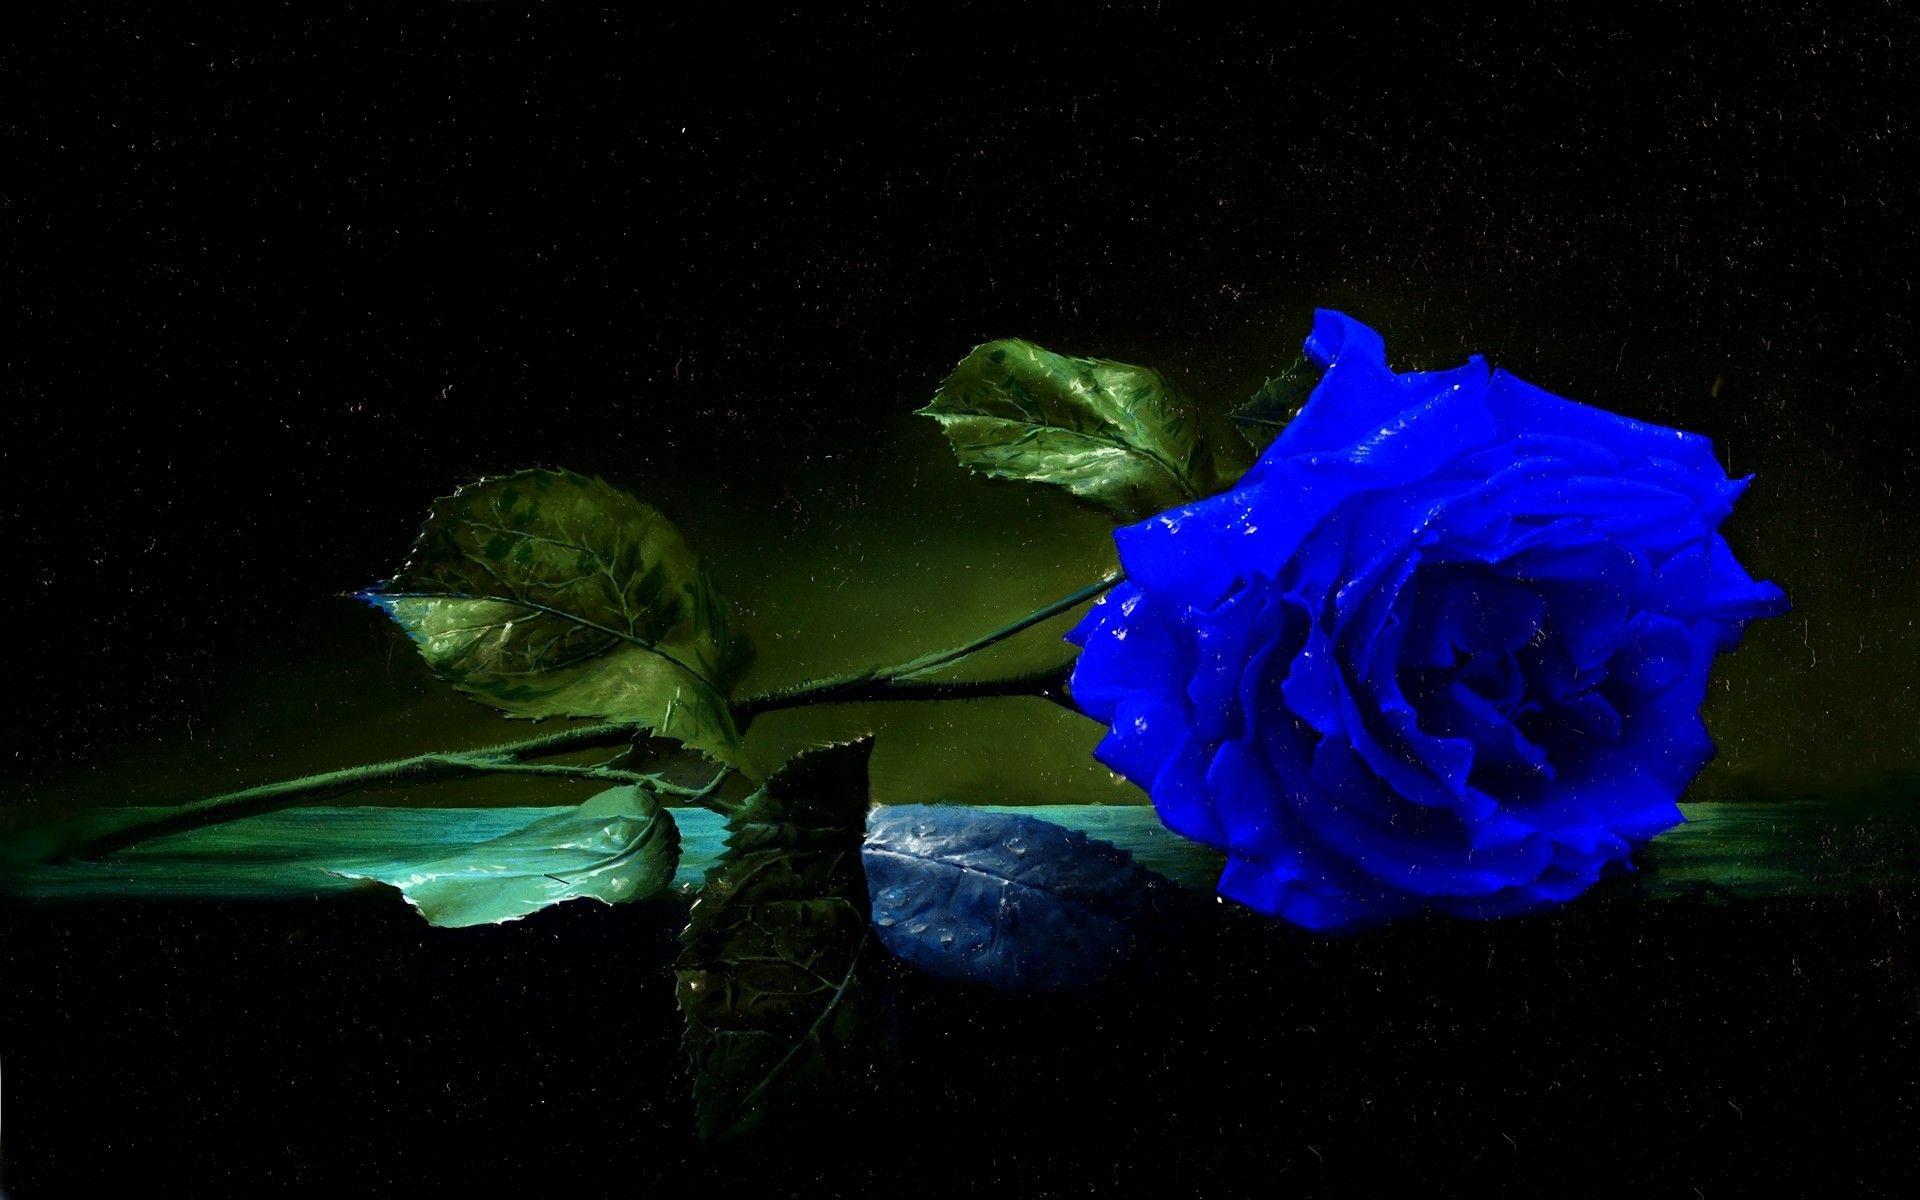 Black and Blue Rose Wallpapers - Top Hình Ảnh Đẹp